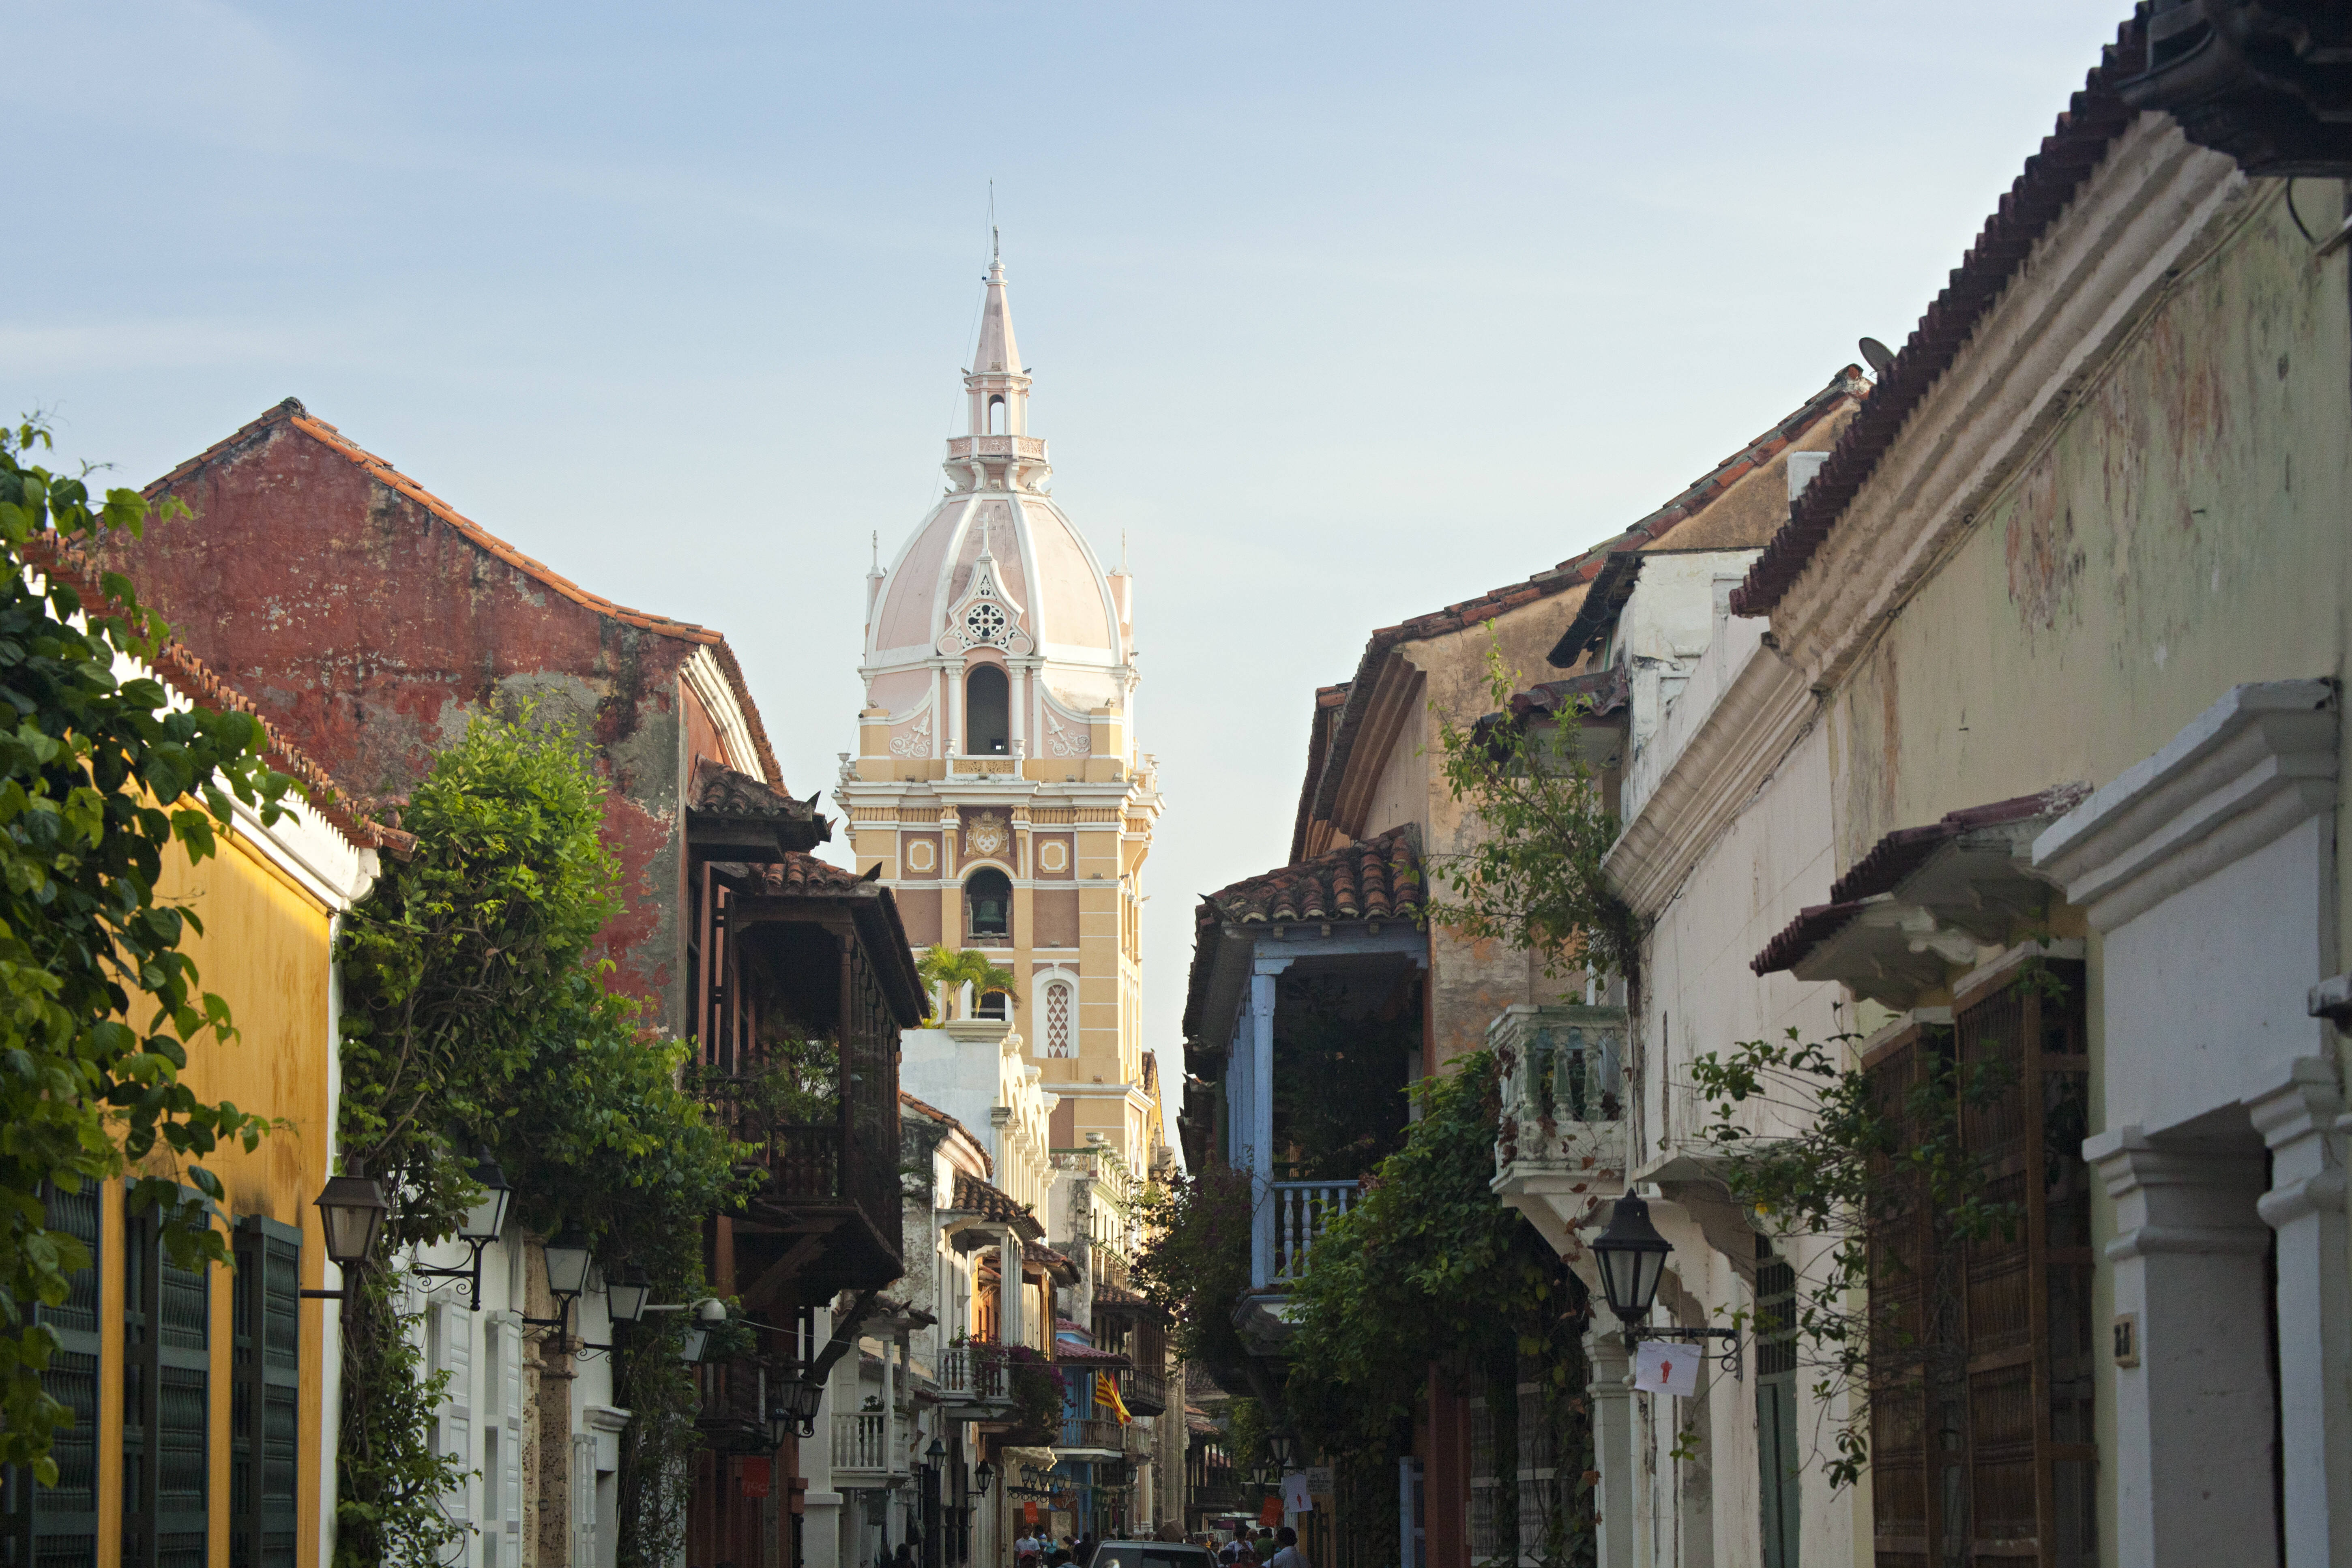 Arquitetura colonial e fachadas coloridas são características marcantes em Cartagena. Foto: Getty Images